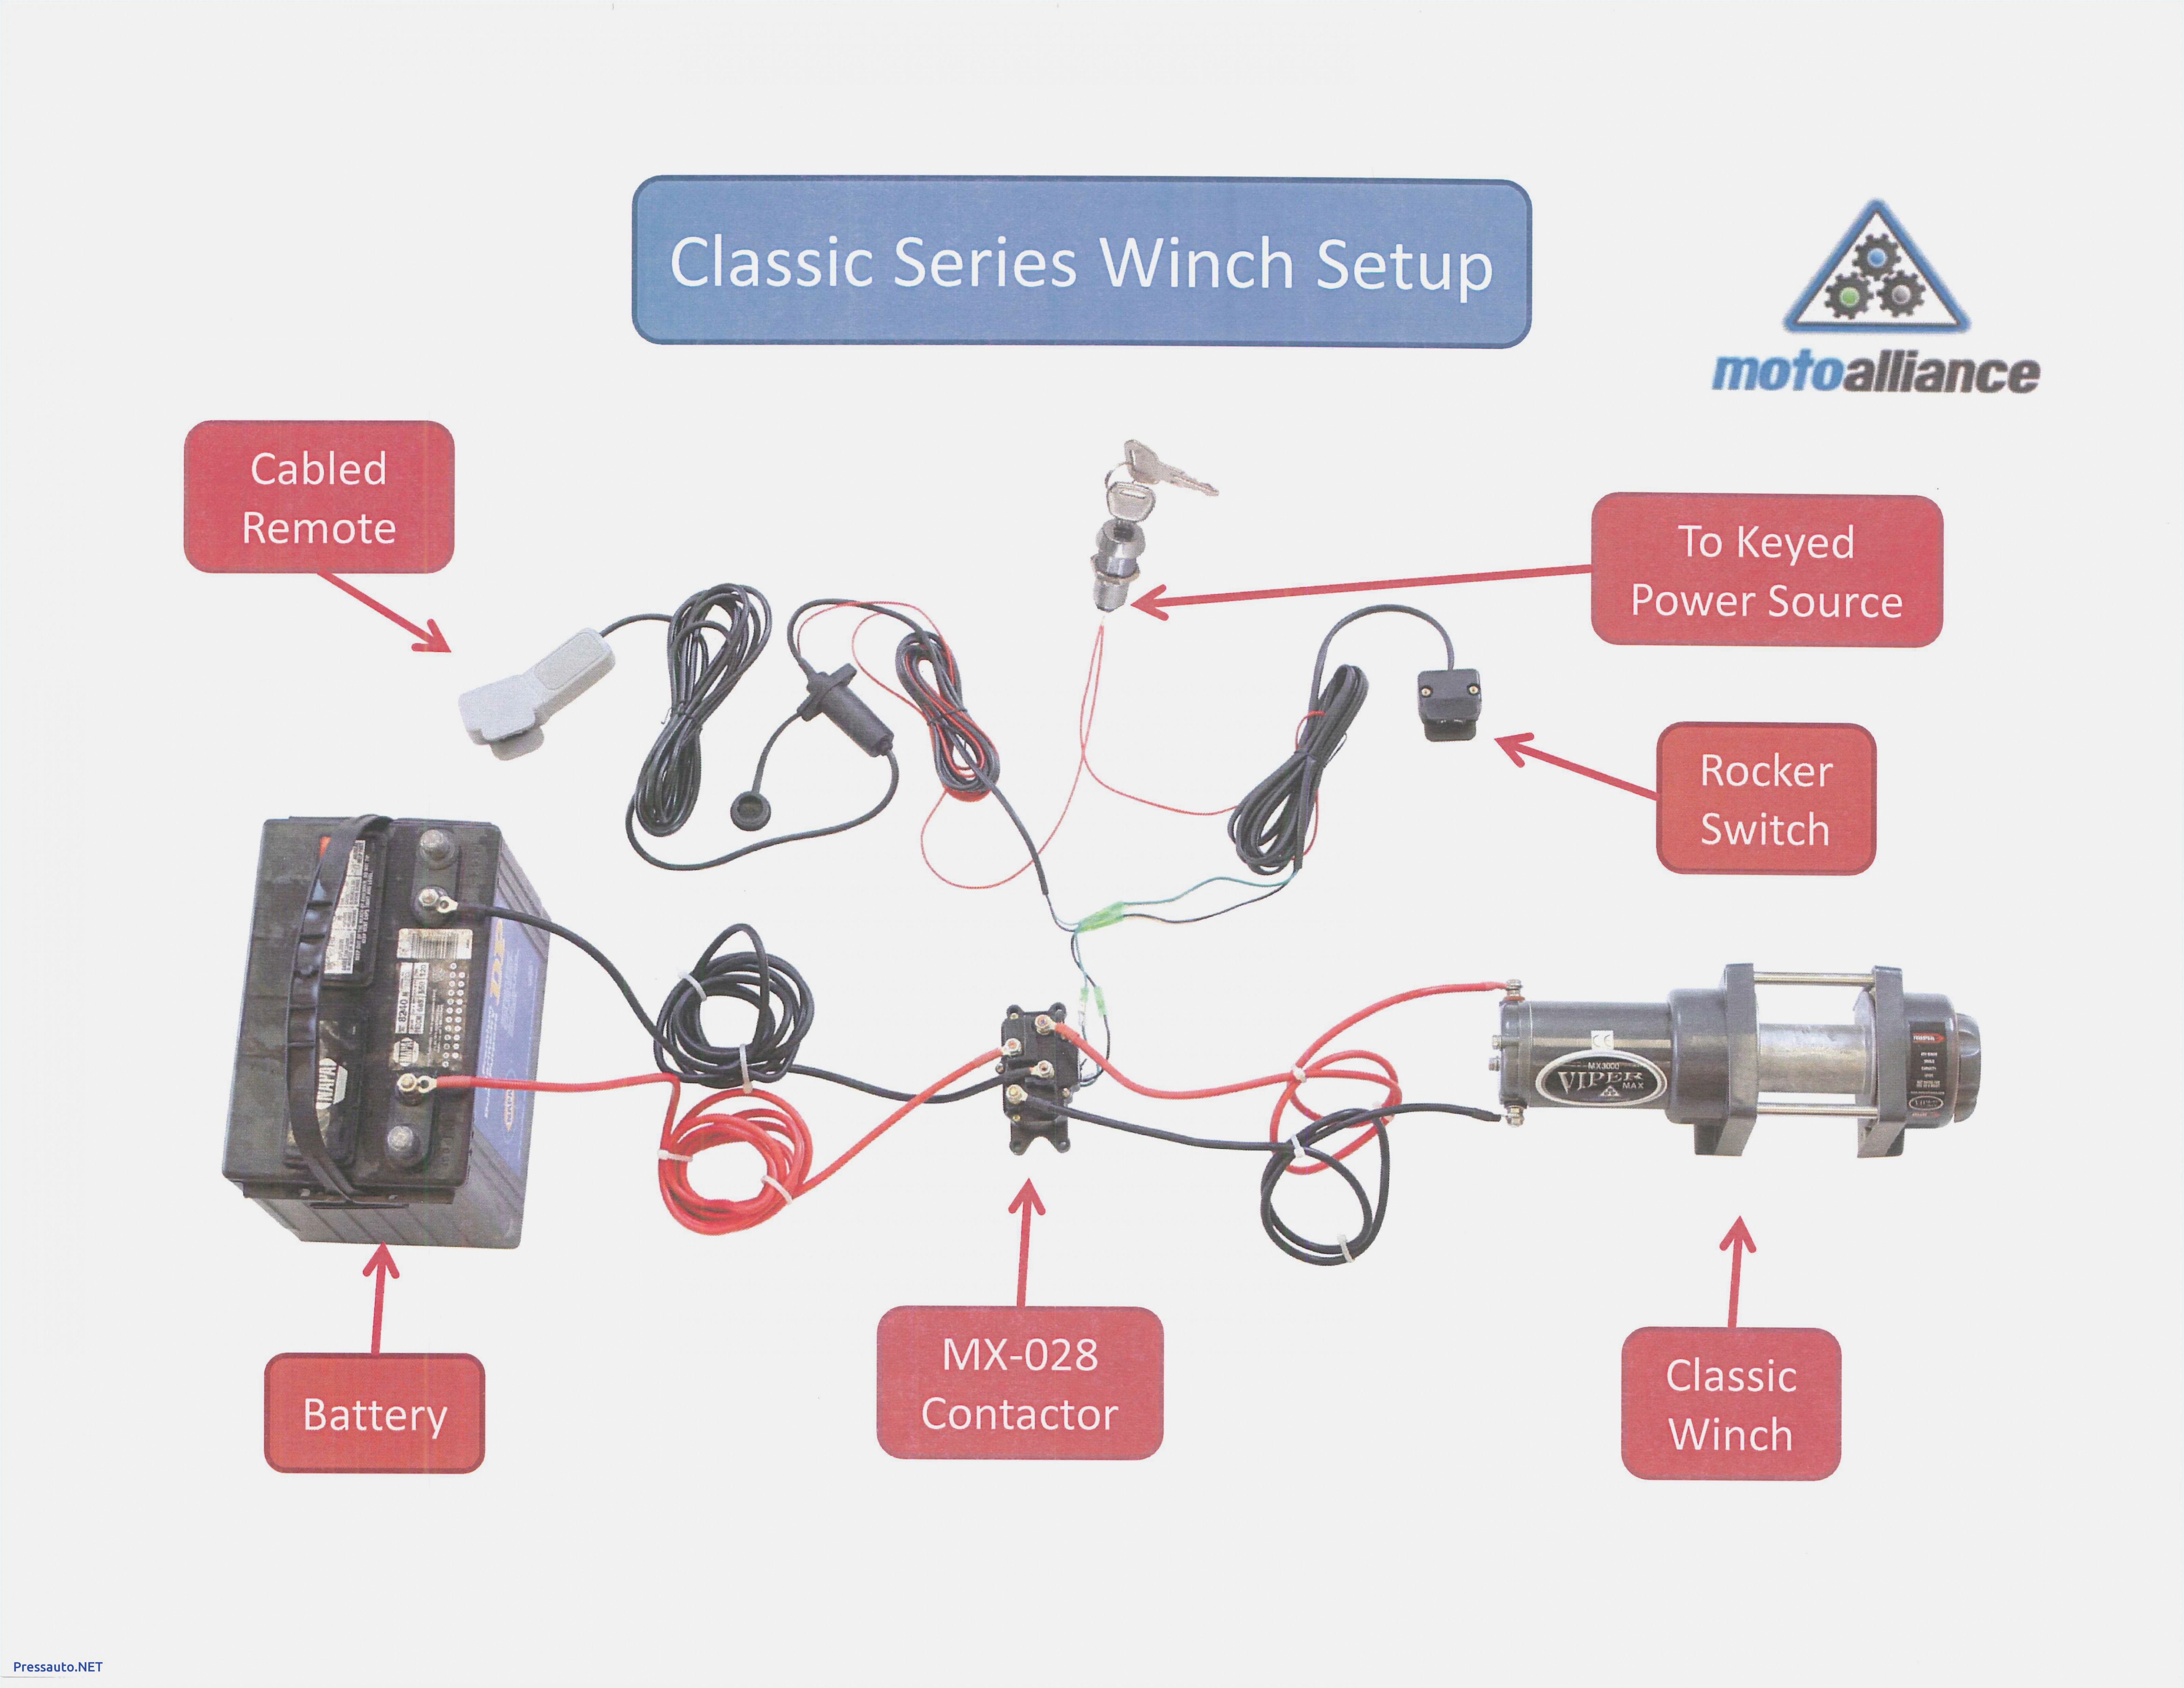 warn atv winch wiring kit schema wiring diagram warn 2500 atv winch wiring diagram warn atv winch wiring kit